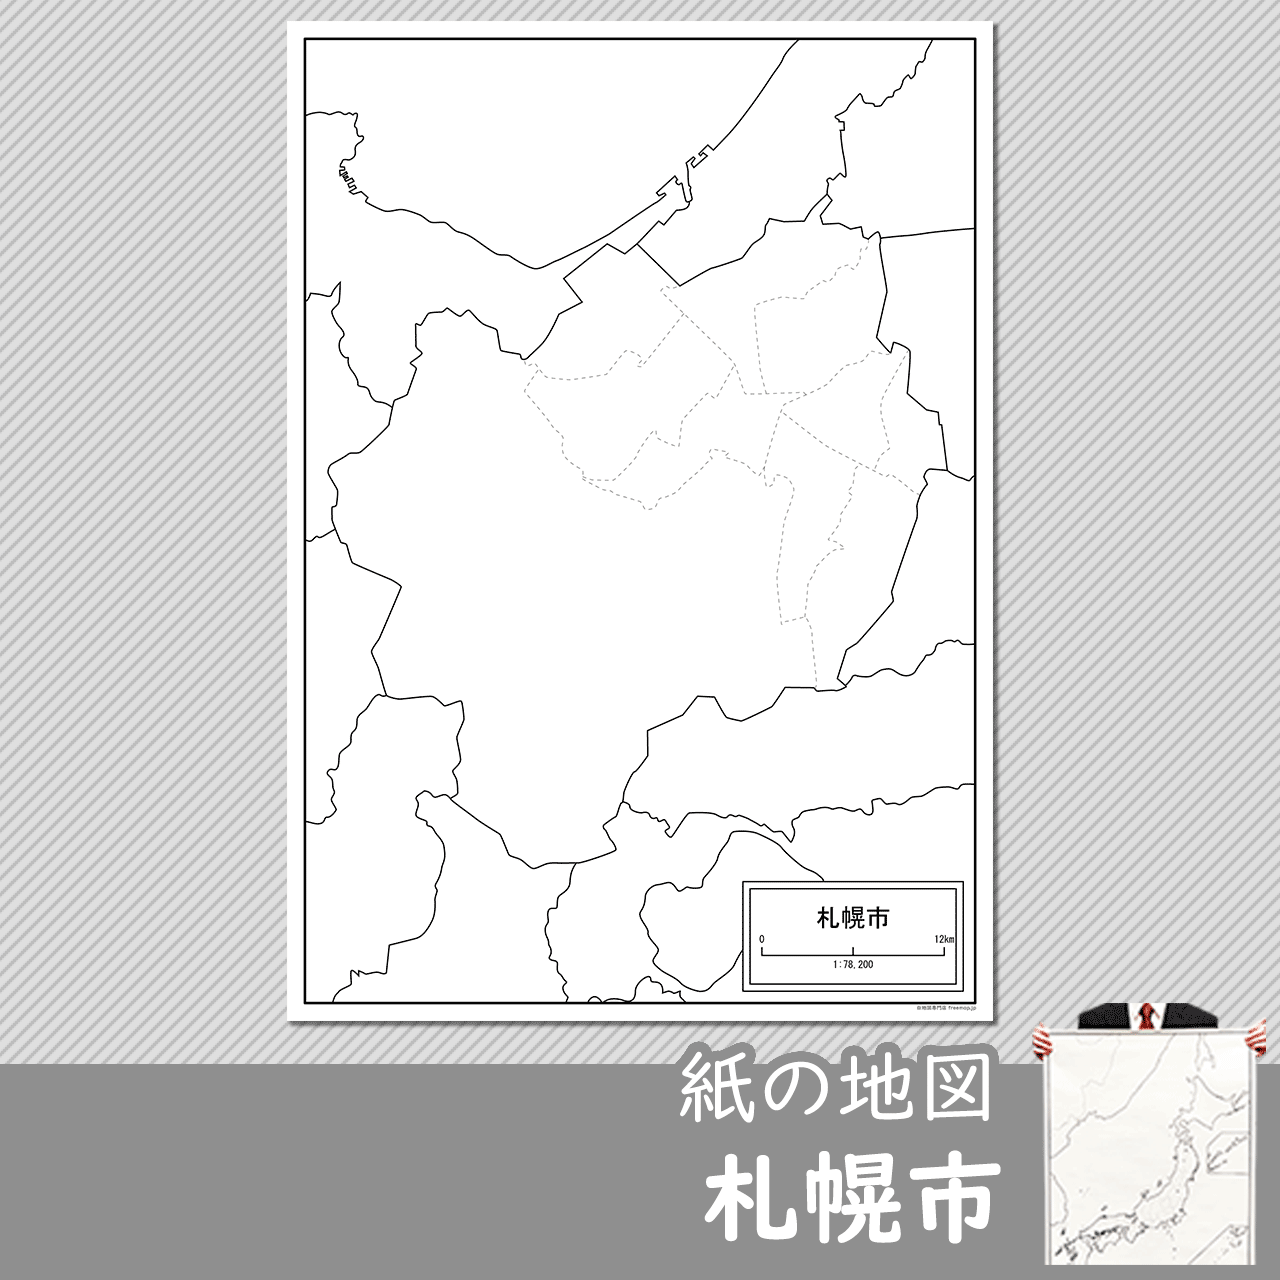 札幌市の紙の白地図のサムネイル